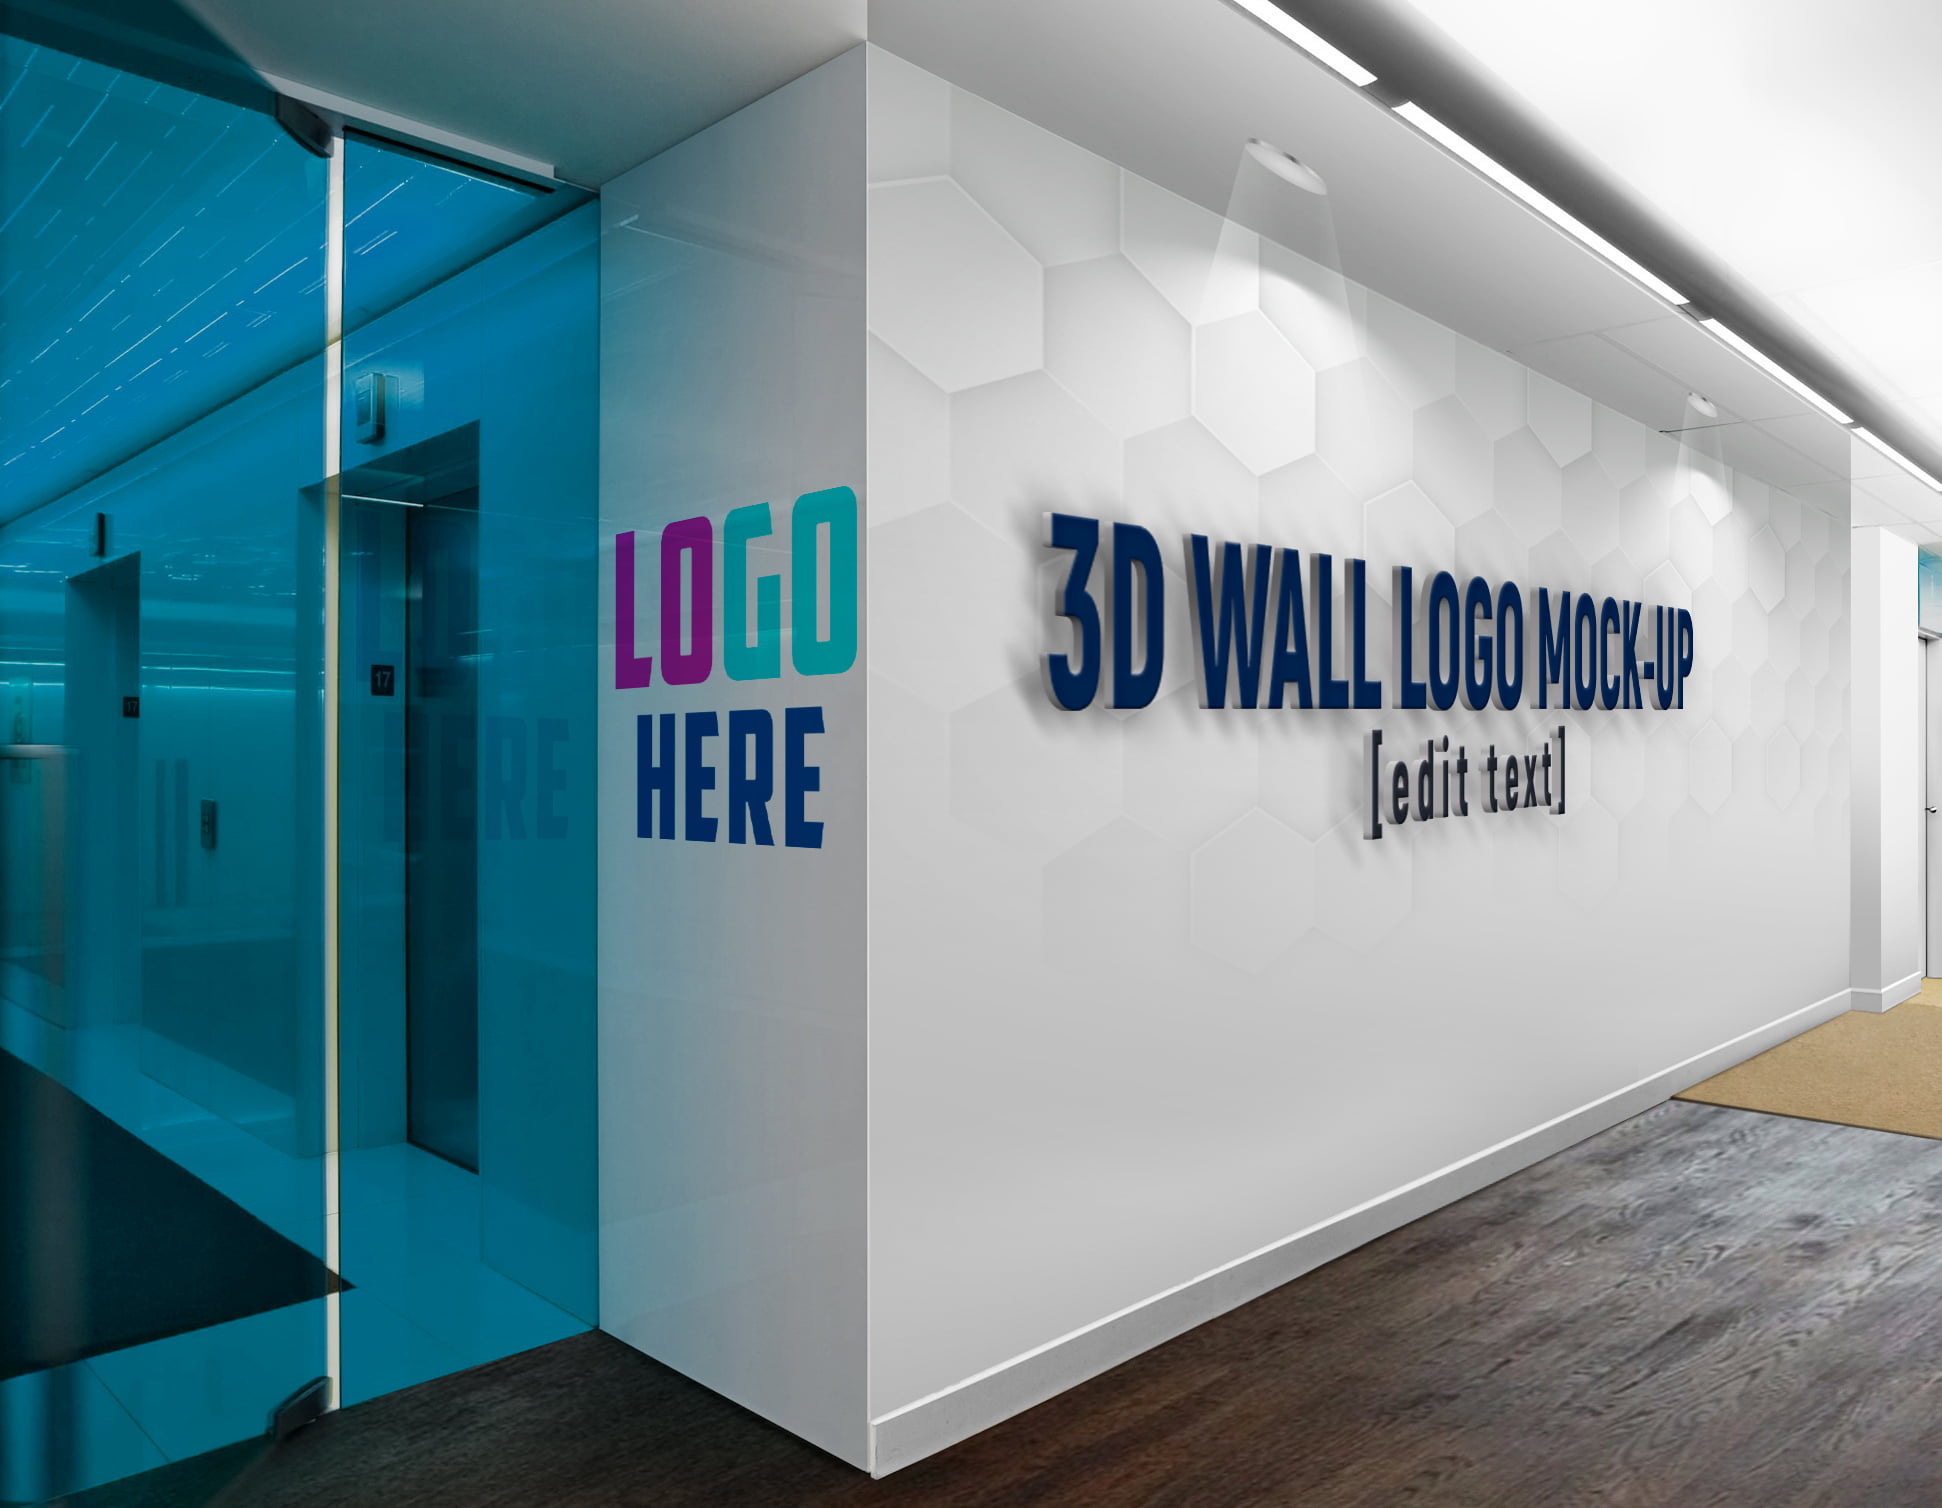 Logo-Wall-SpotLights-3D-Wall-Logo-&-Slogan-Mockup